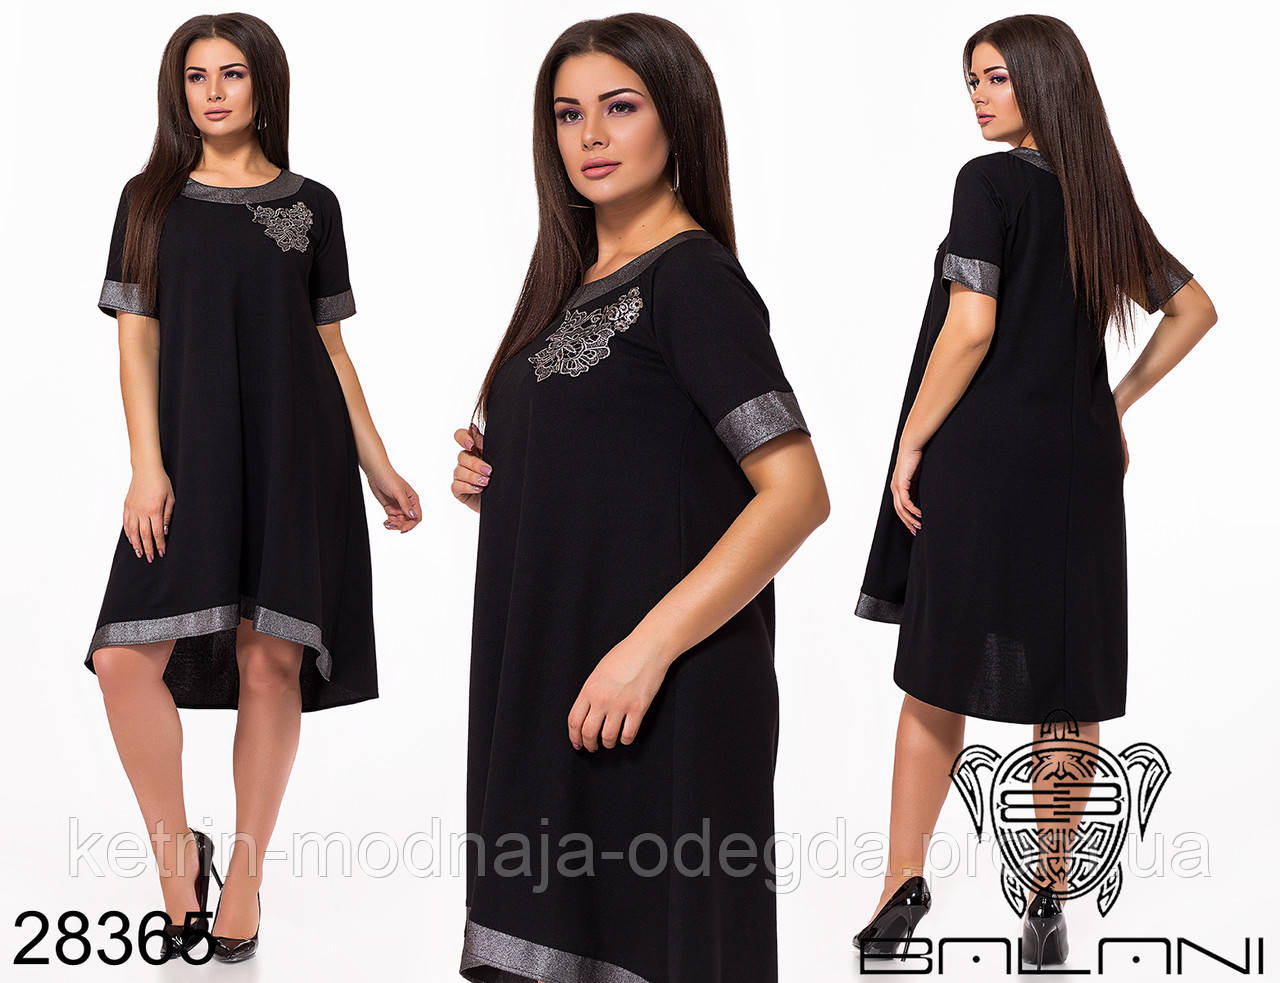 

Нарядное элегантное асимметричное женское платье свободного кроя больших размеров 48 - 62